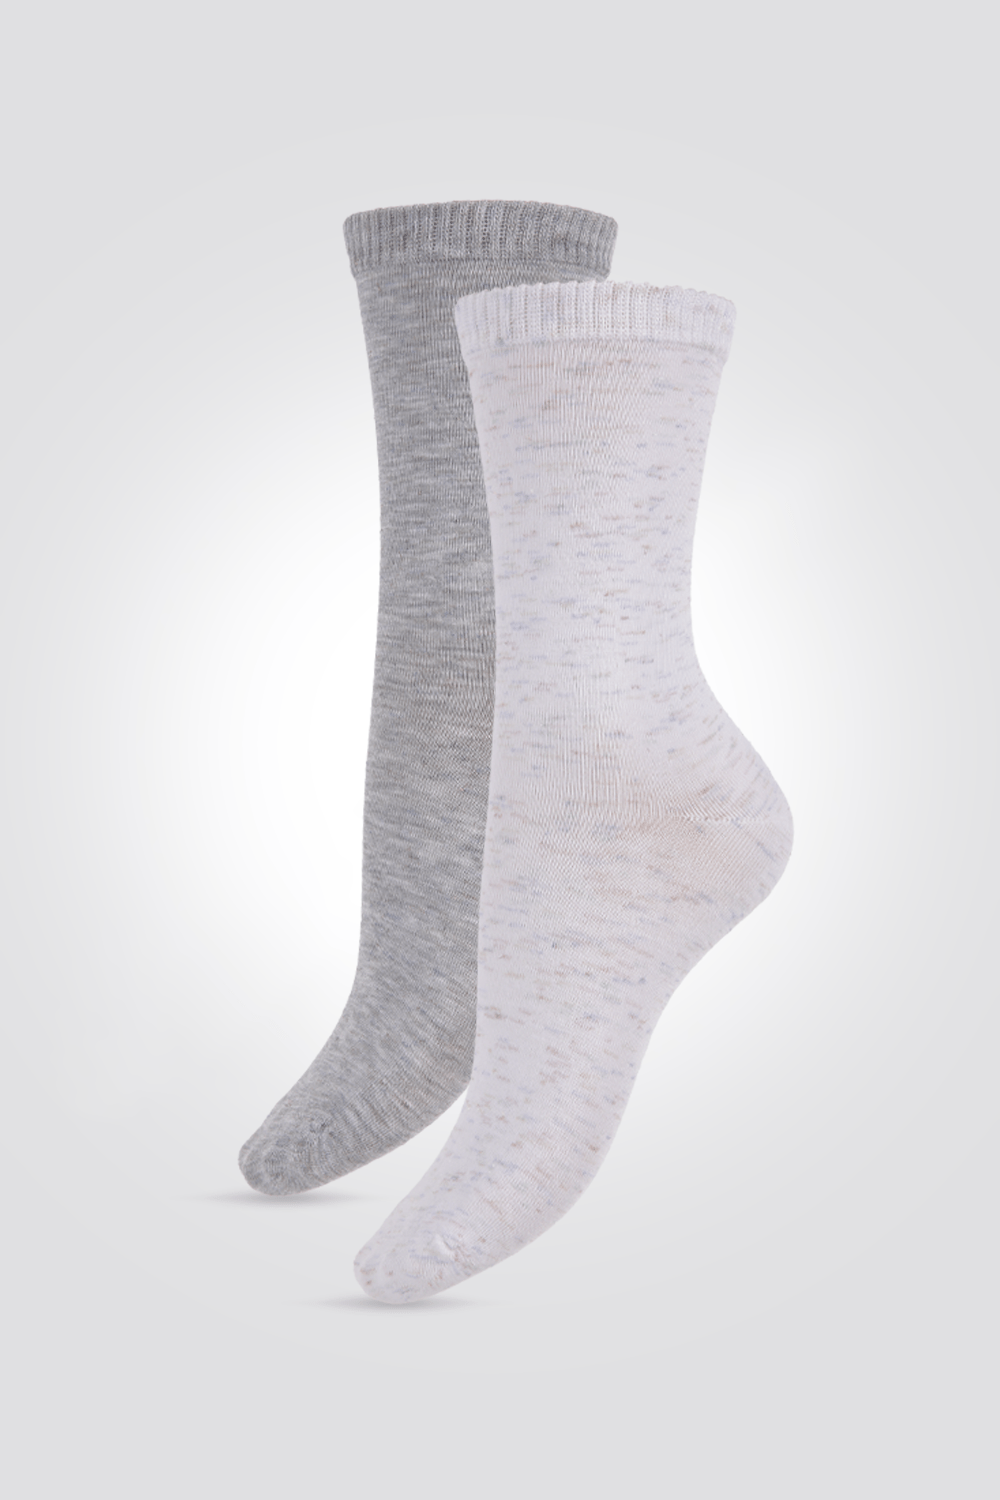 DELTA - מארז 2 זוגות גרביים גבוהות לורקס לנשים בצבע אפור - MASHBIR//365